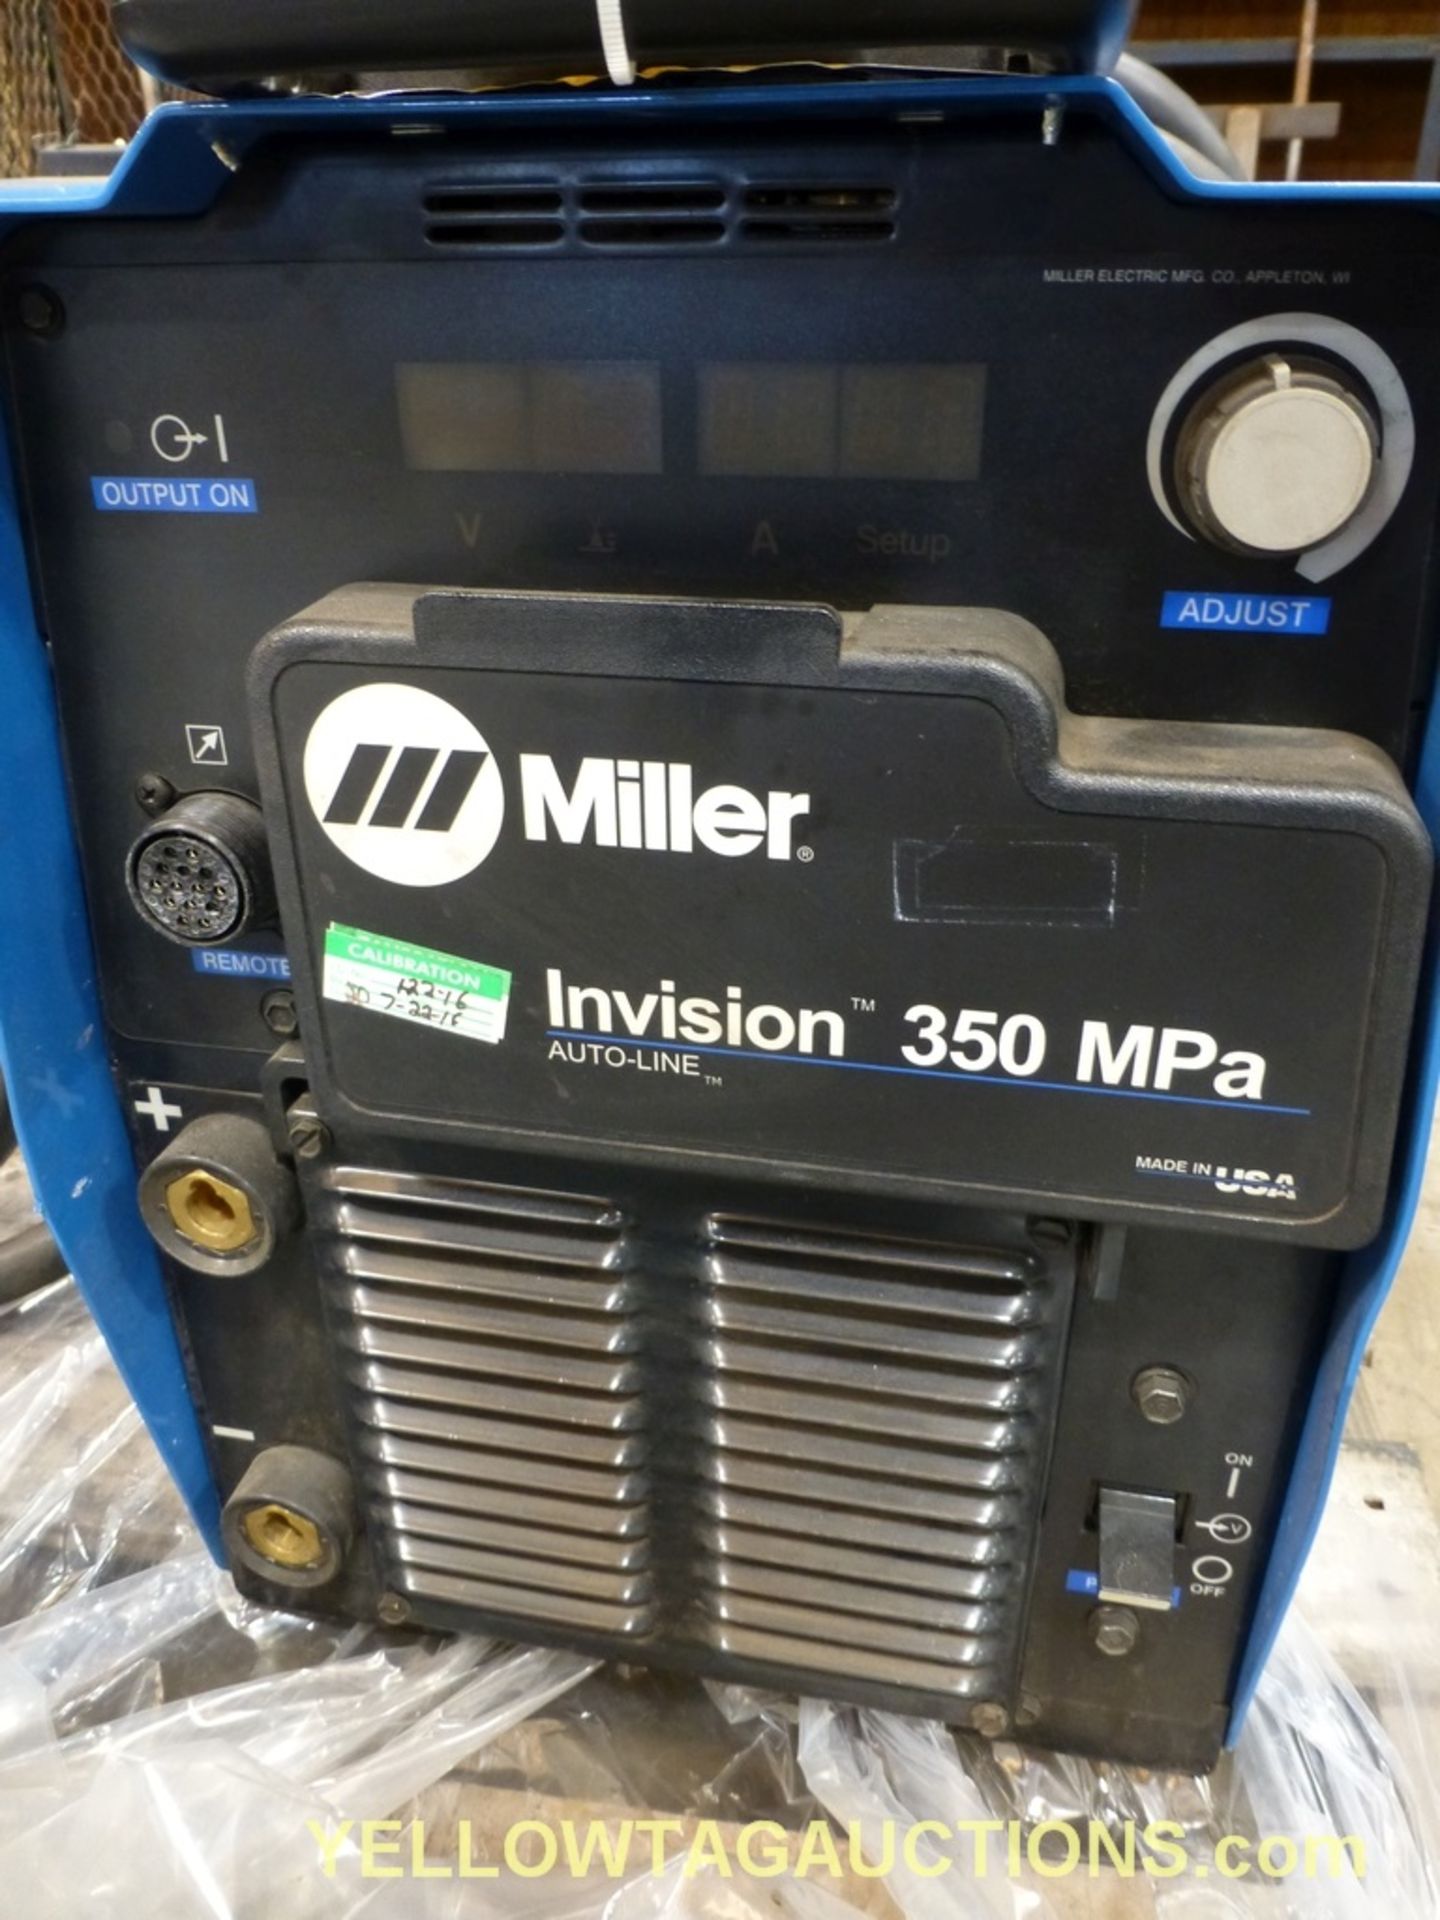 Miller Invision Auto Lite 350 MPA | Model No. 907397; 11.2/13.6A; 208/575V; 50/60Hz - Image 2 of 8